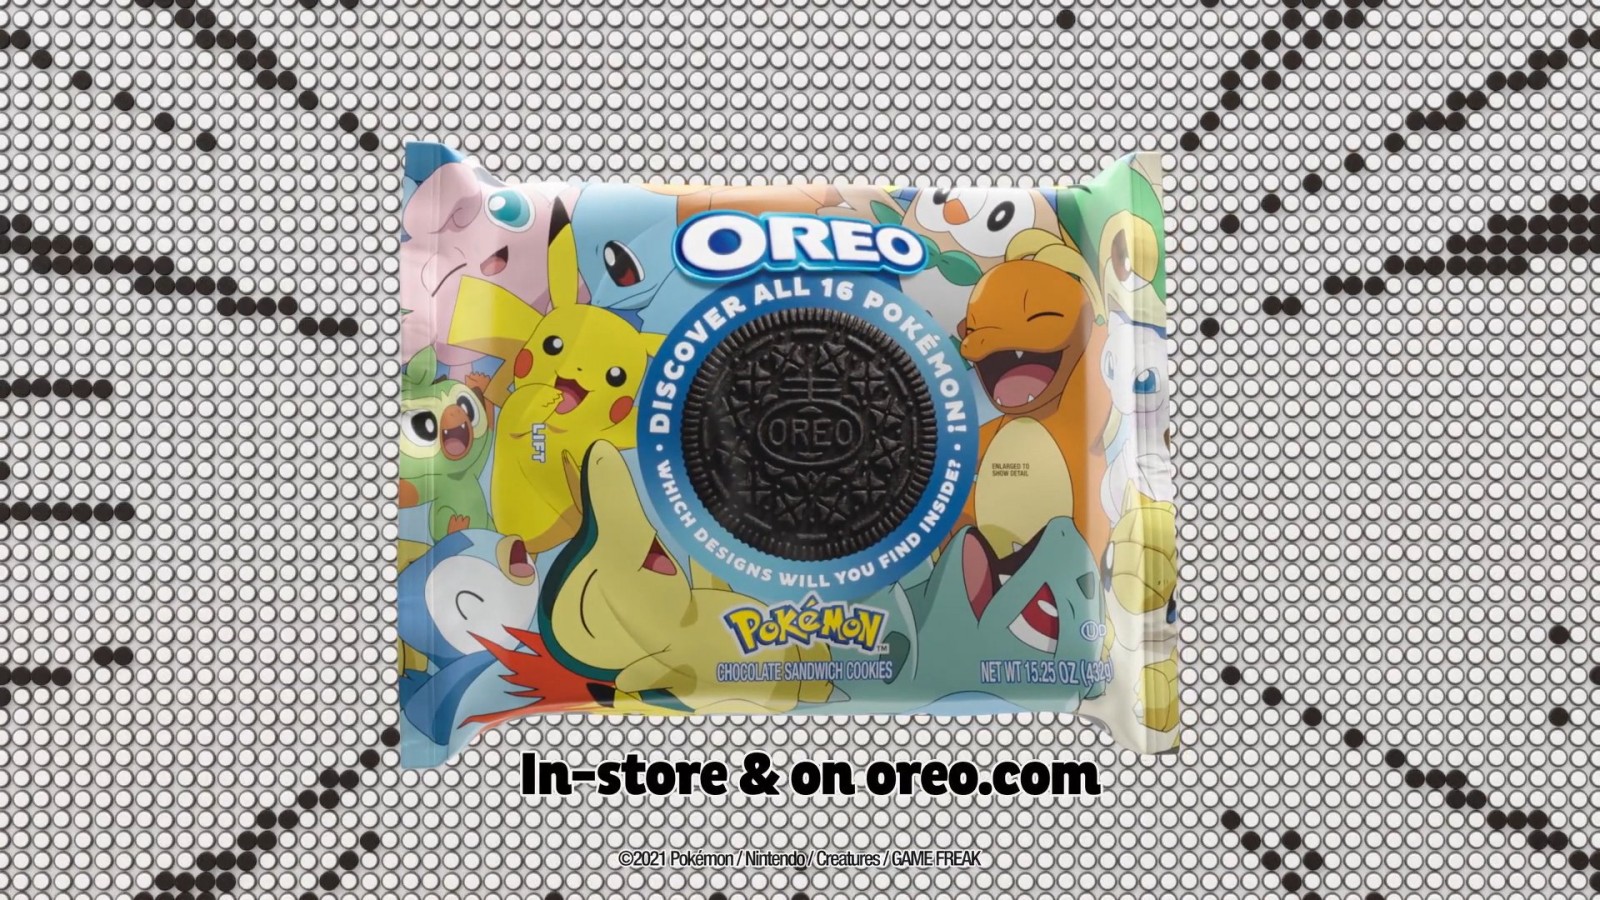 Ya esta aquí la colaboración entre Pokémon y OREO con unas galletas edición especial